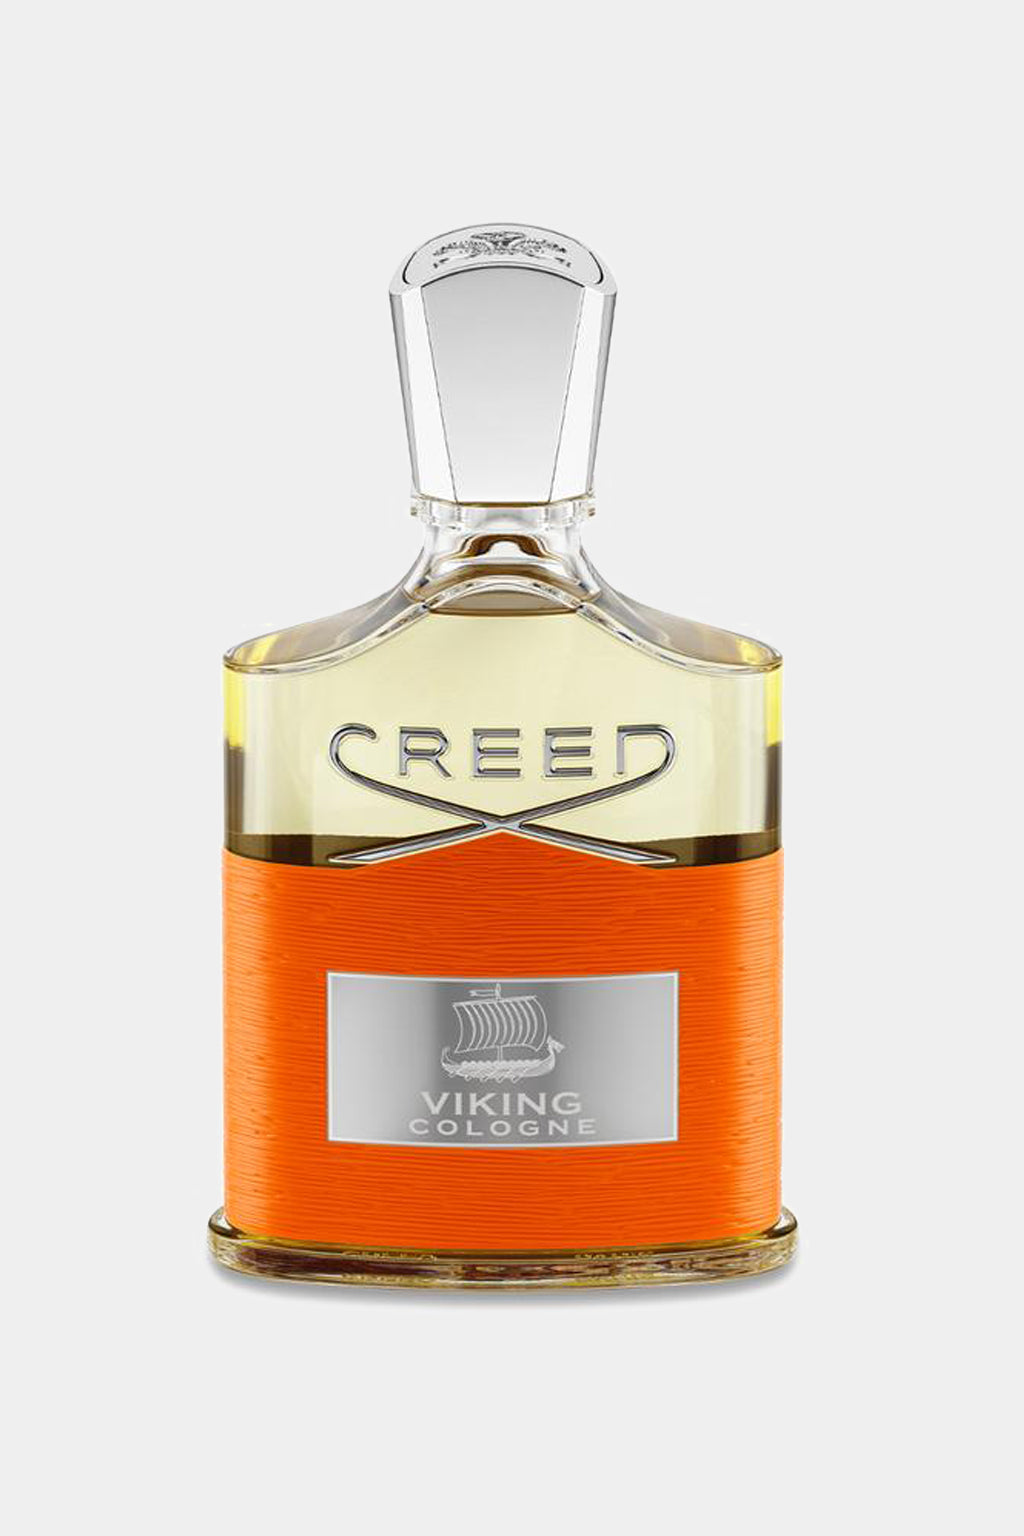 Creed - Viking Cologne Eau de Parfum